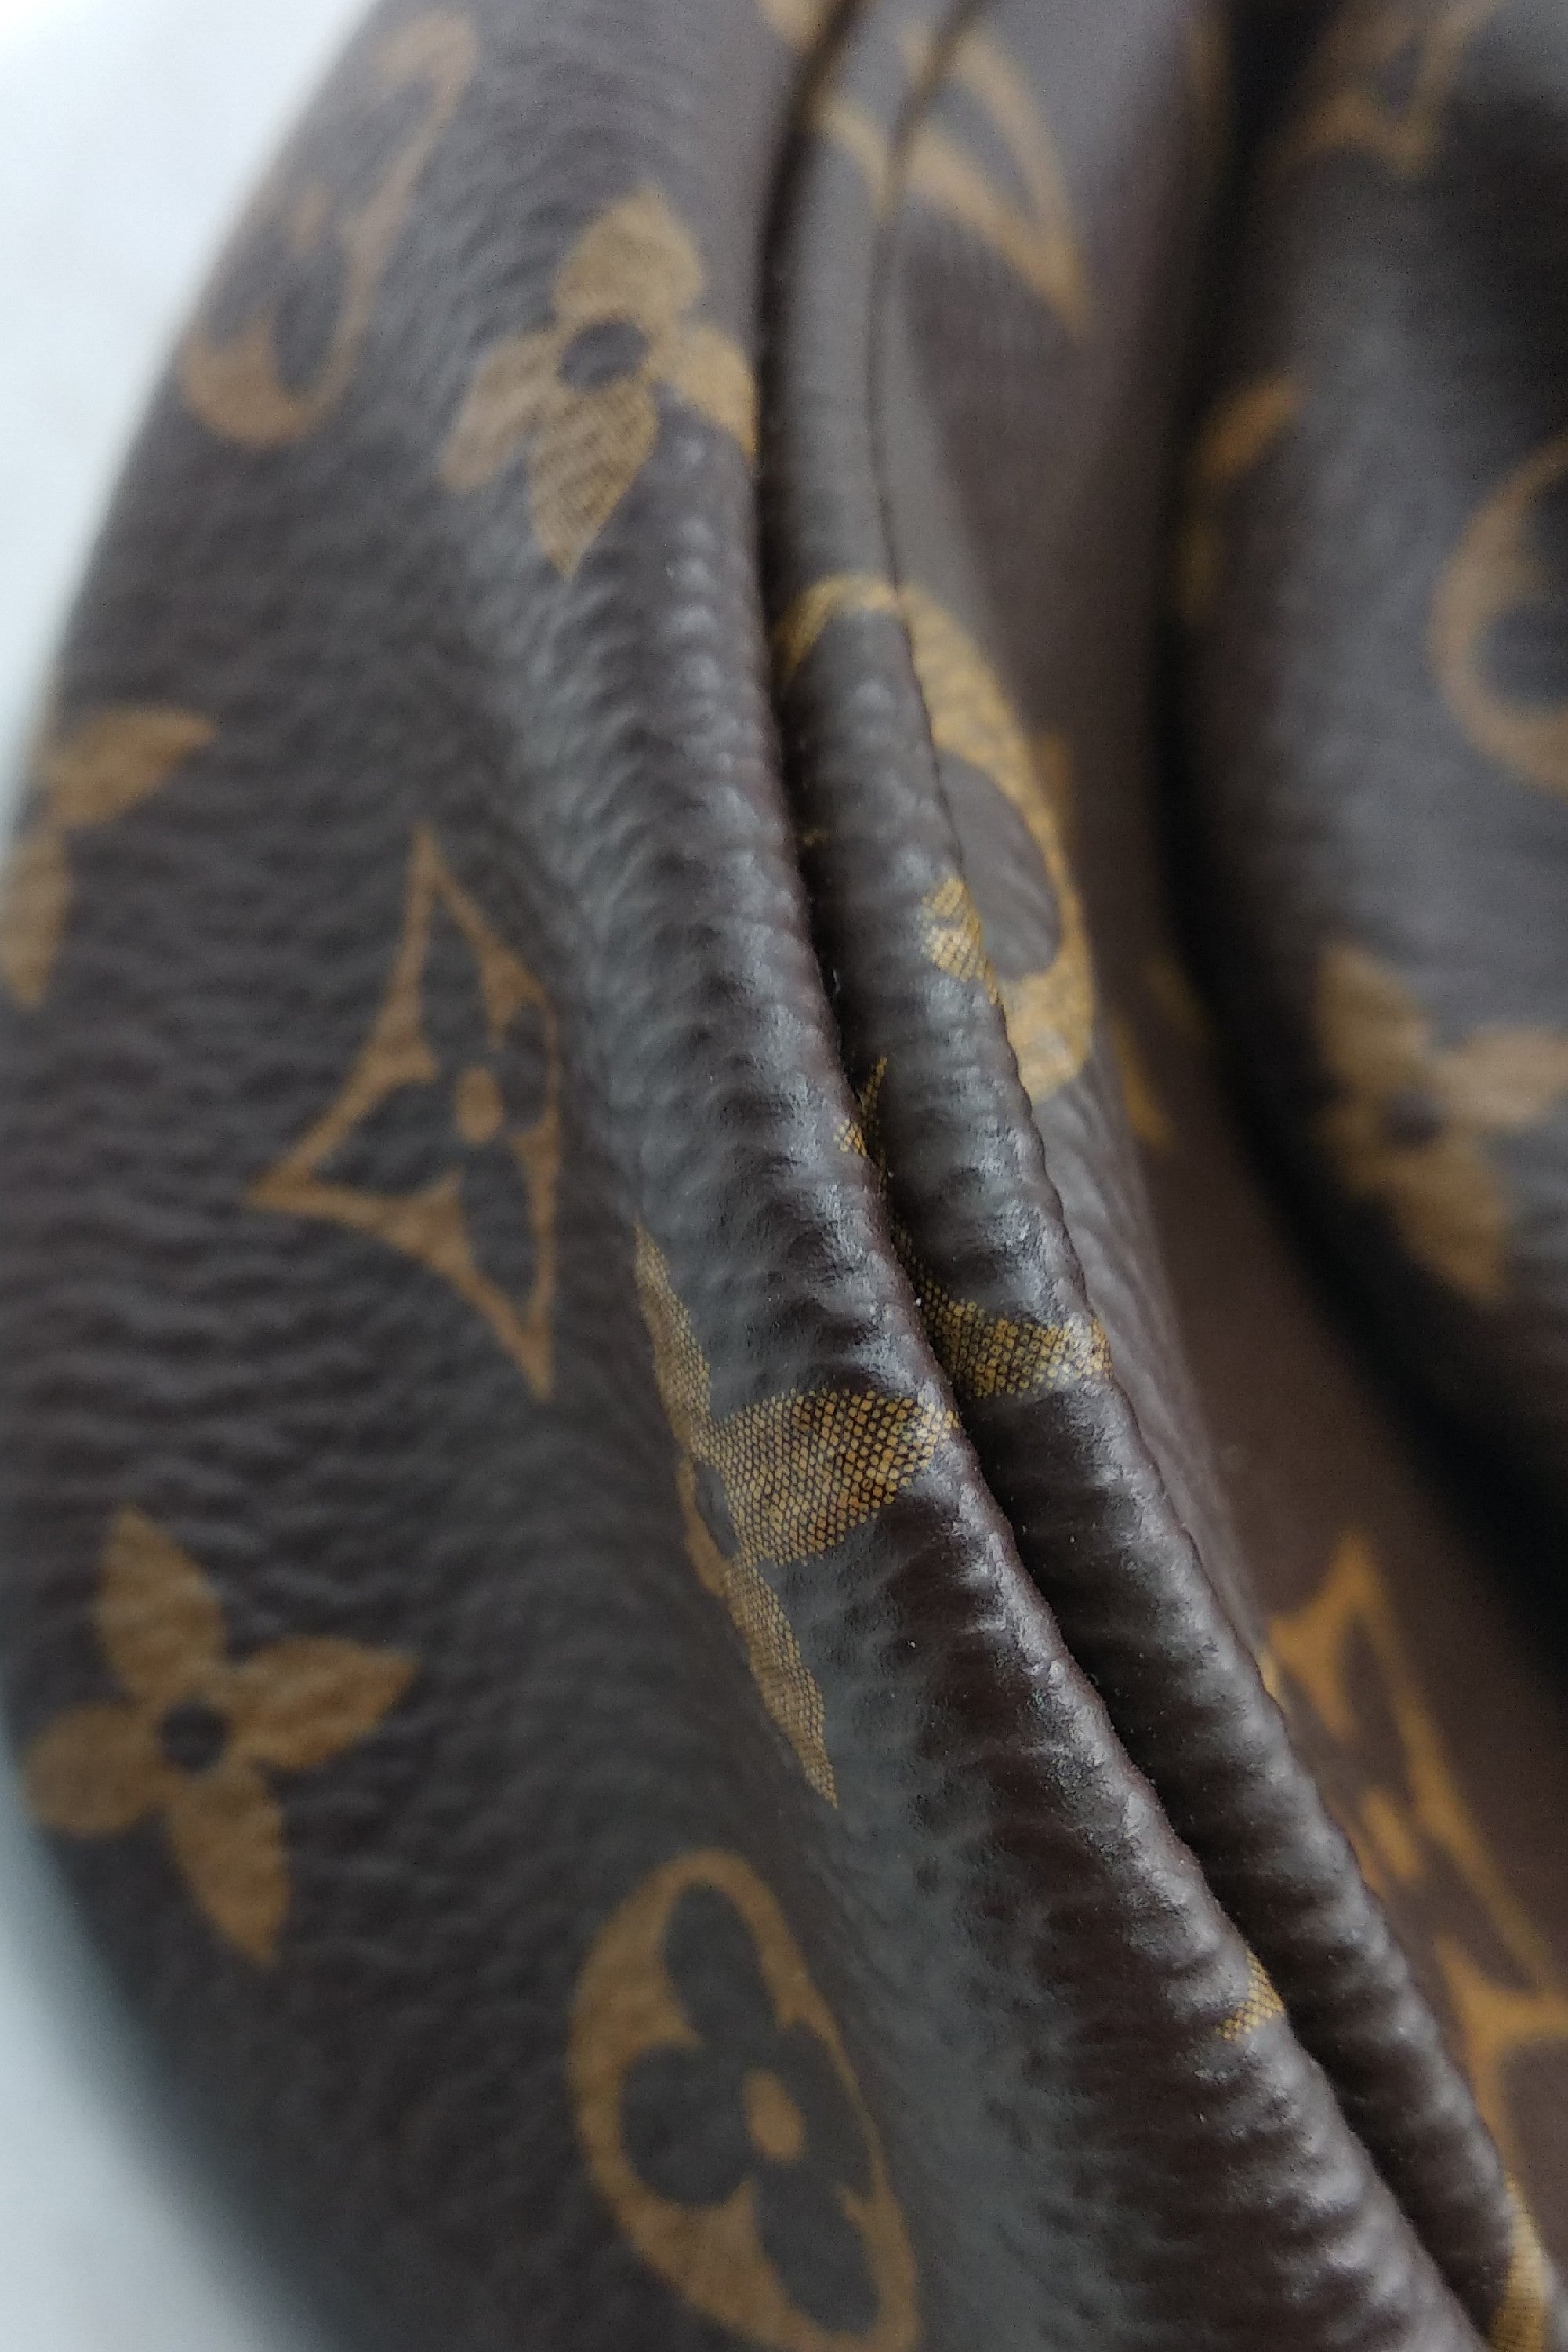 Louis Vuitton // 2020 Brown & Khaki Monogram Multi Pochette Accessoires Bag  – VSP Consignment